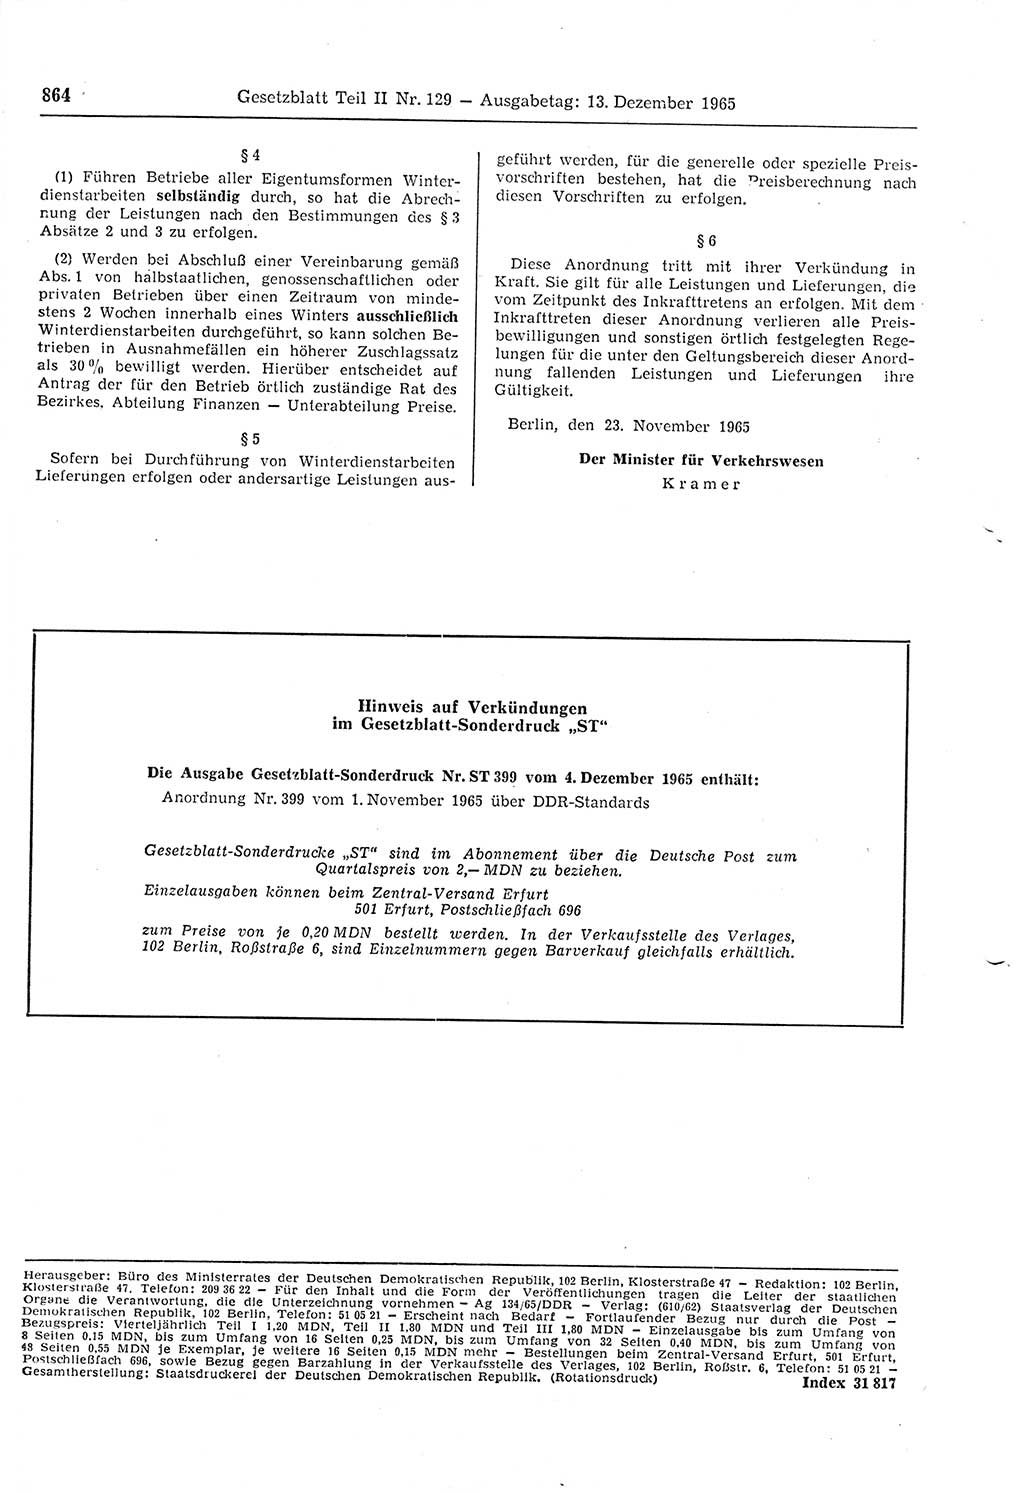 Gesetzblatt (GBl.) der Deutschen Demokratischen Republik (DDR) Teil ⅠⅠ 1965, Seite 864 (GBl. DDR ⅠⅠ 1965, S. 864)